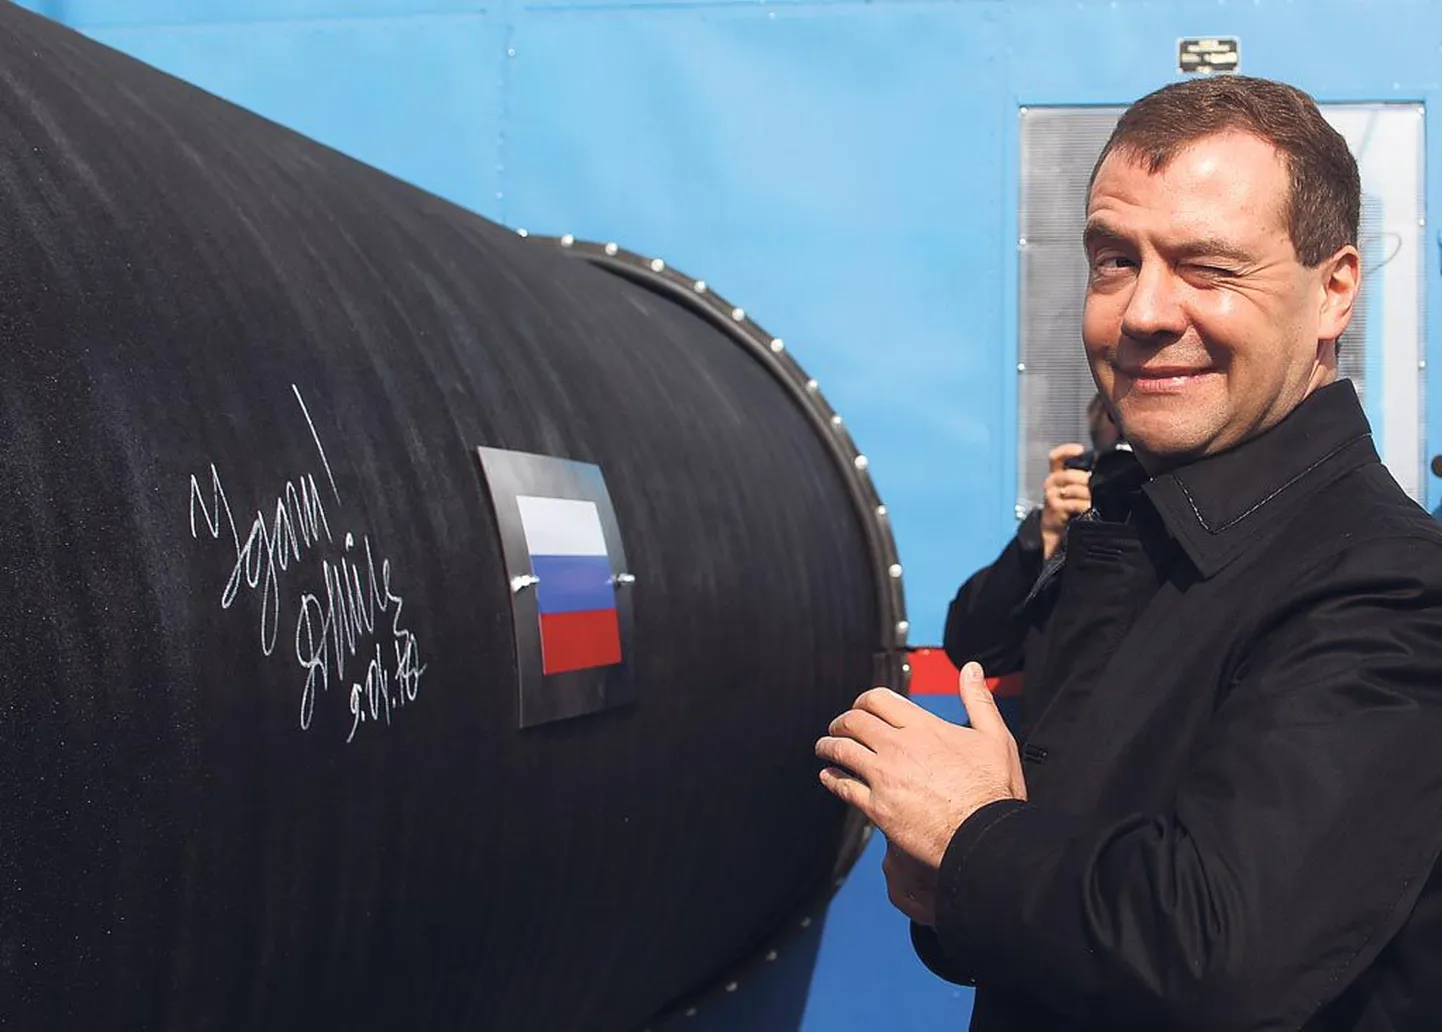 9. aprillil 2010 soovis Vene president Dmitri Medvedev Nordstreami gaasitorule õnnestumist, kui Viiburi lähedalt algas Läänemere-aluse 7,4 miljardi eurose eelarvega gaasijuhtme ehitus Saksamaale Greifswaldi.